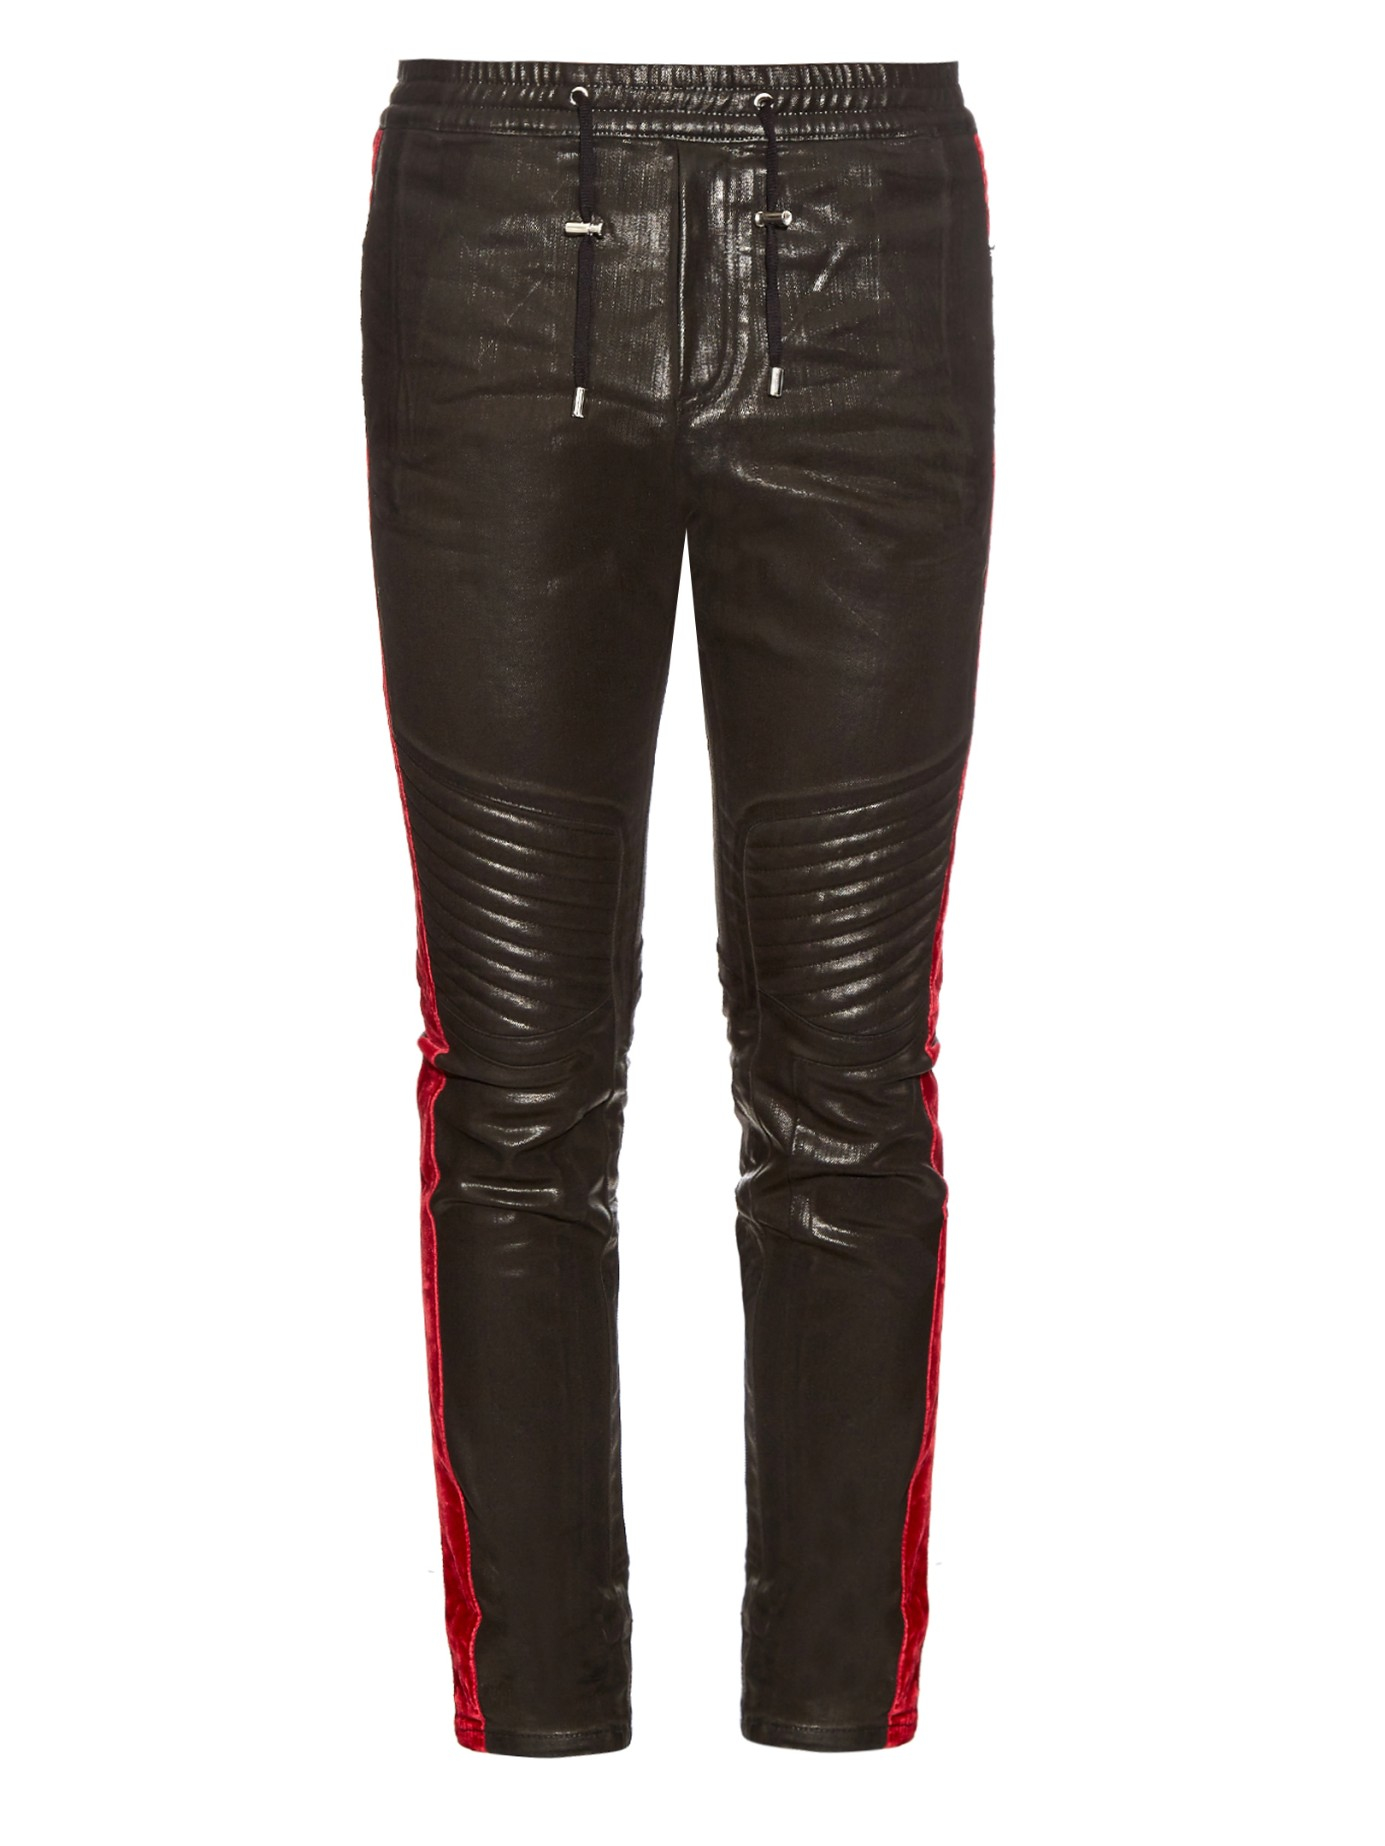 熱い販売 Balmain Trousers Black パンツ・ボトムスその他 サイズを選択してください:IT48(M) - caspan